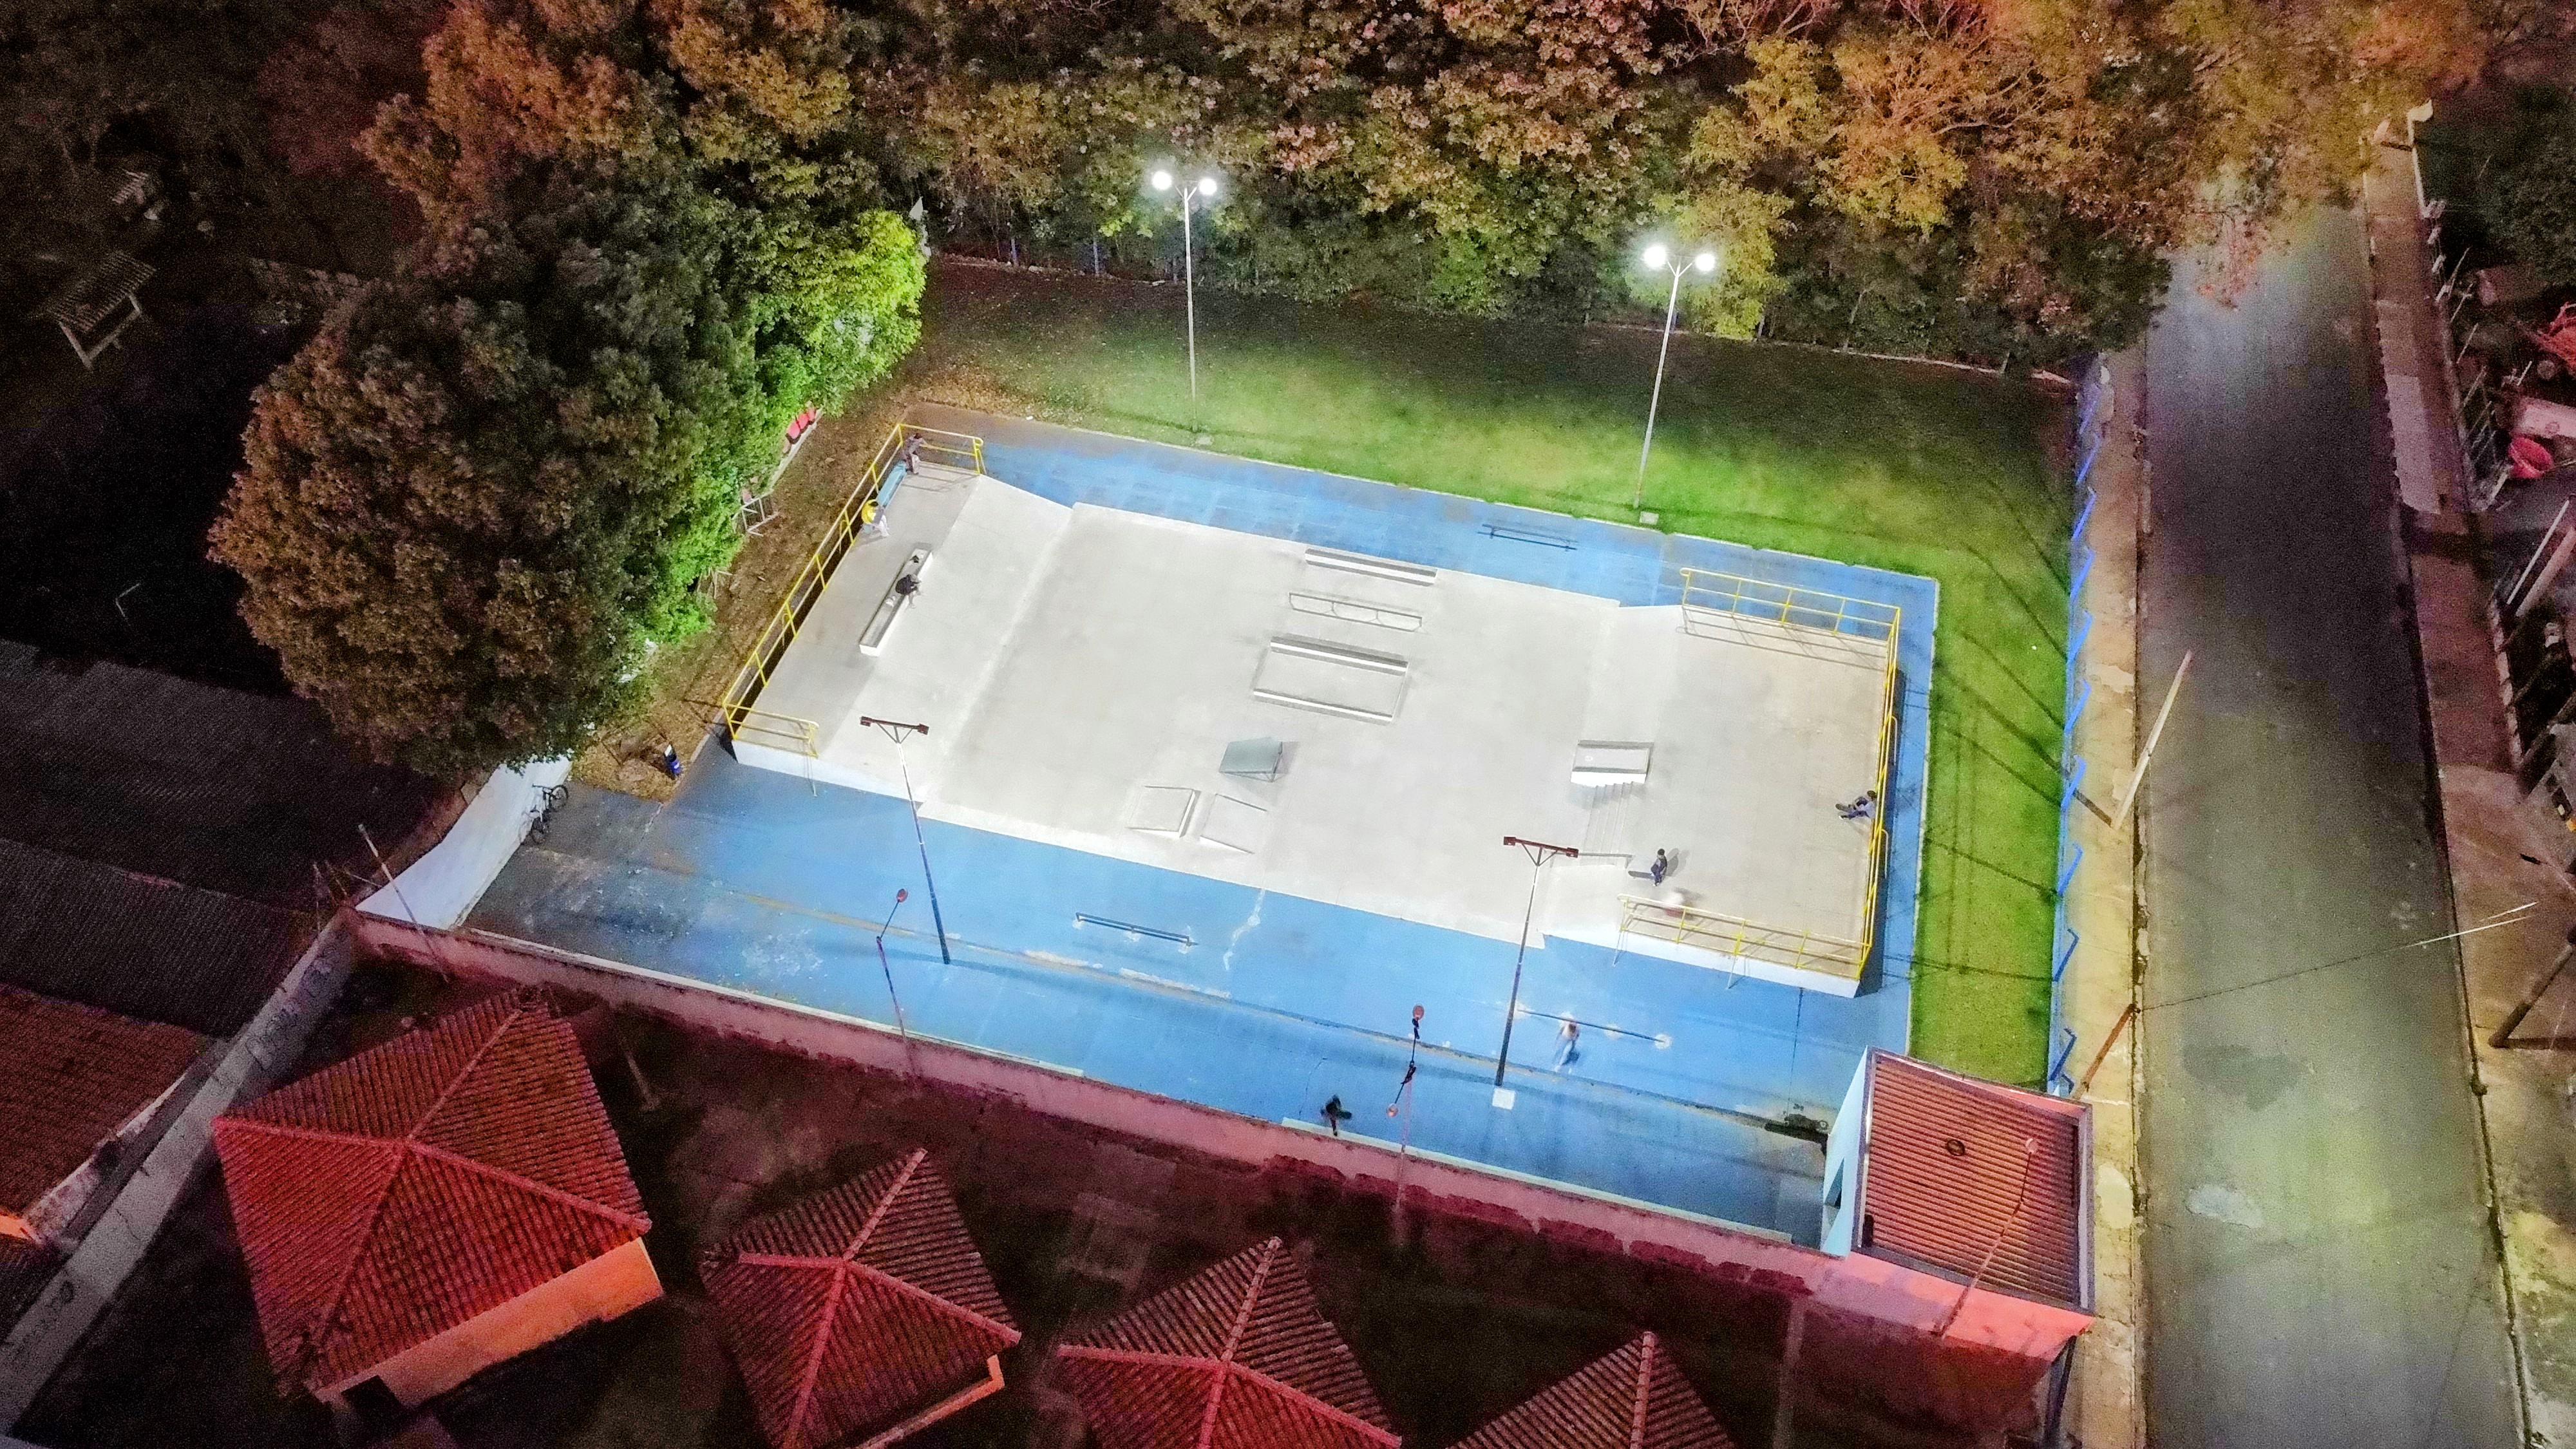 Vista aérea mostra nova iluminação do local. Foto: Luís Fernando da Silva / Prefeitura de Urupês